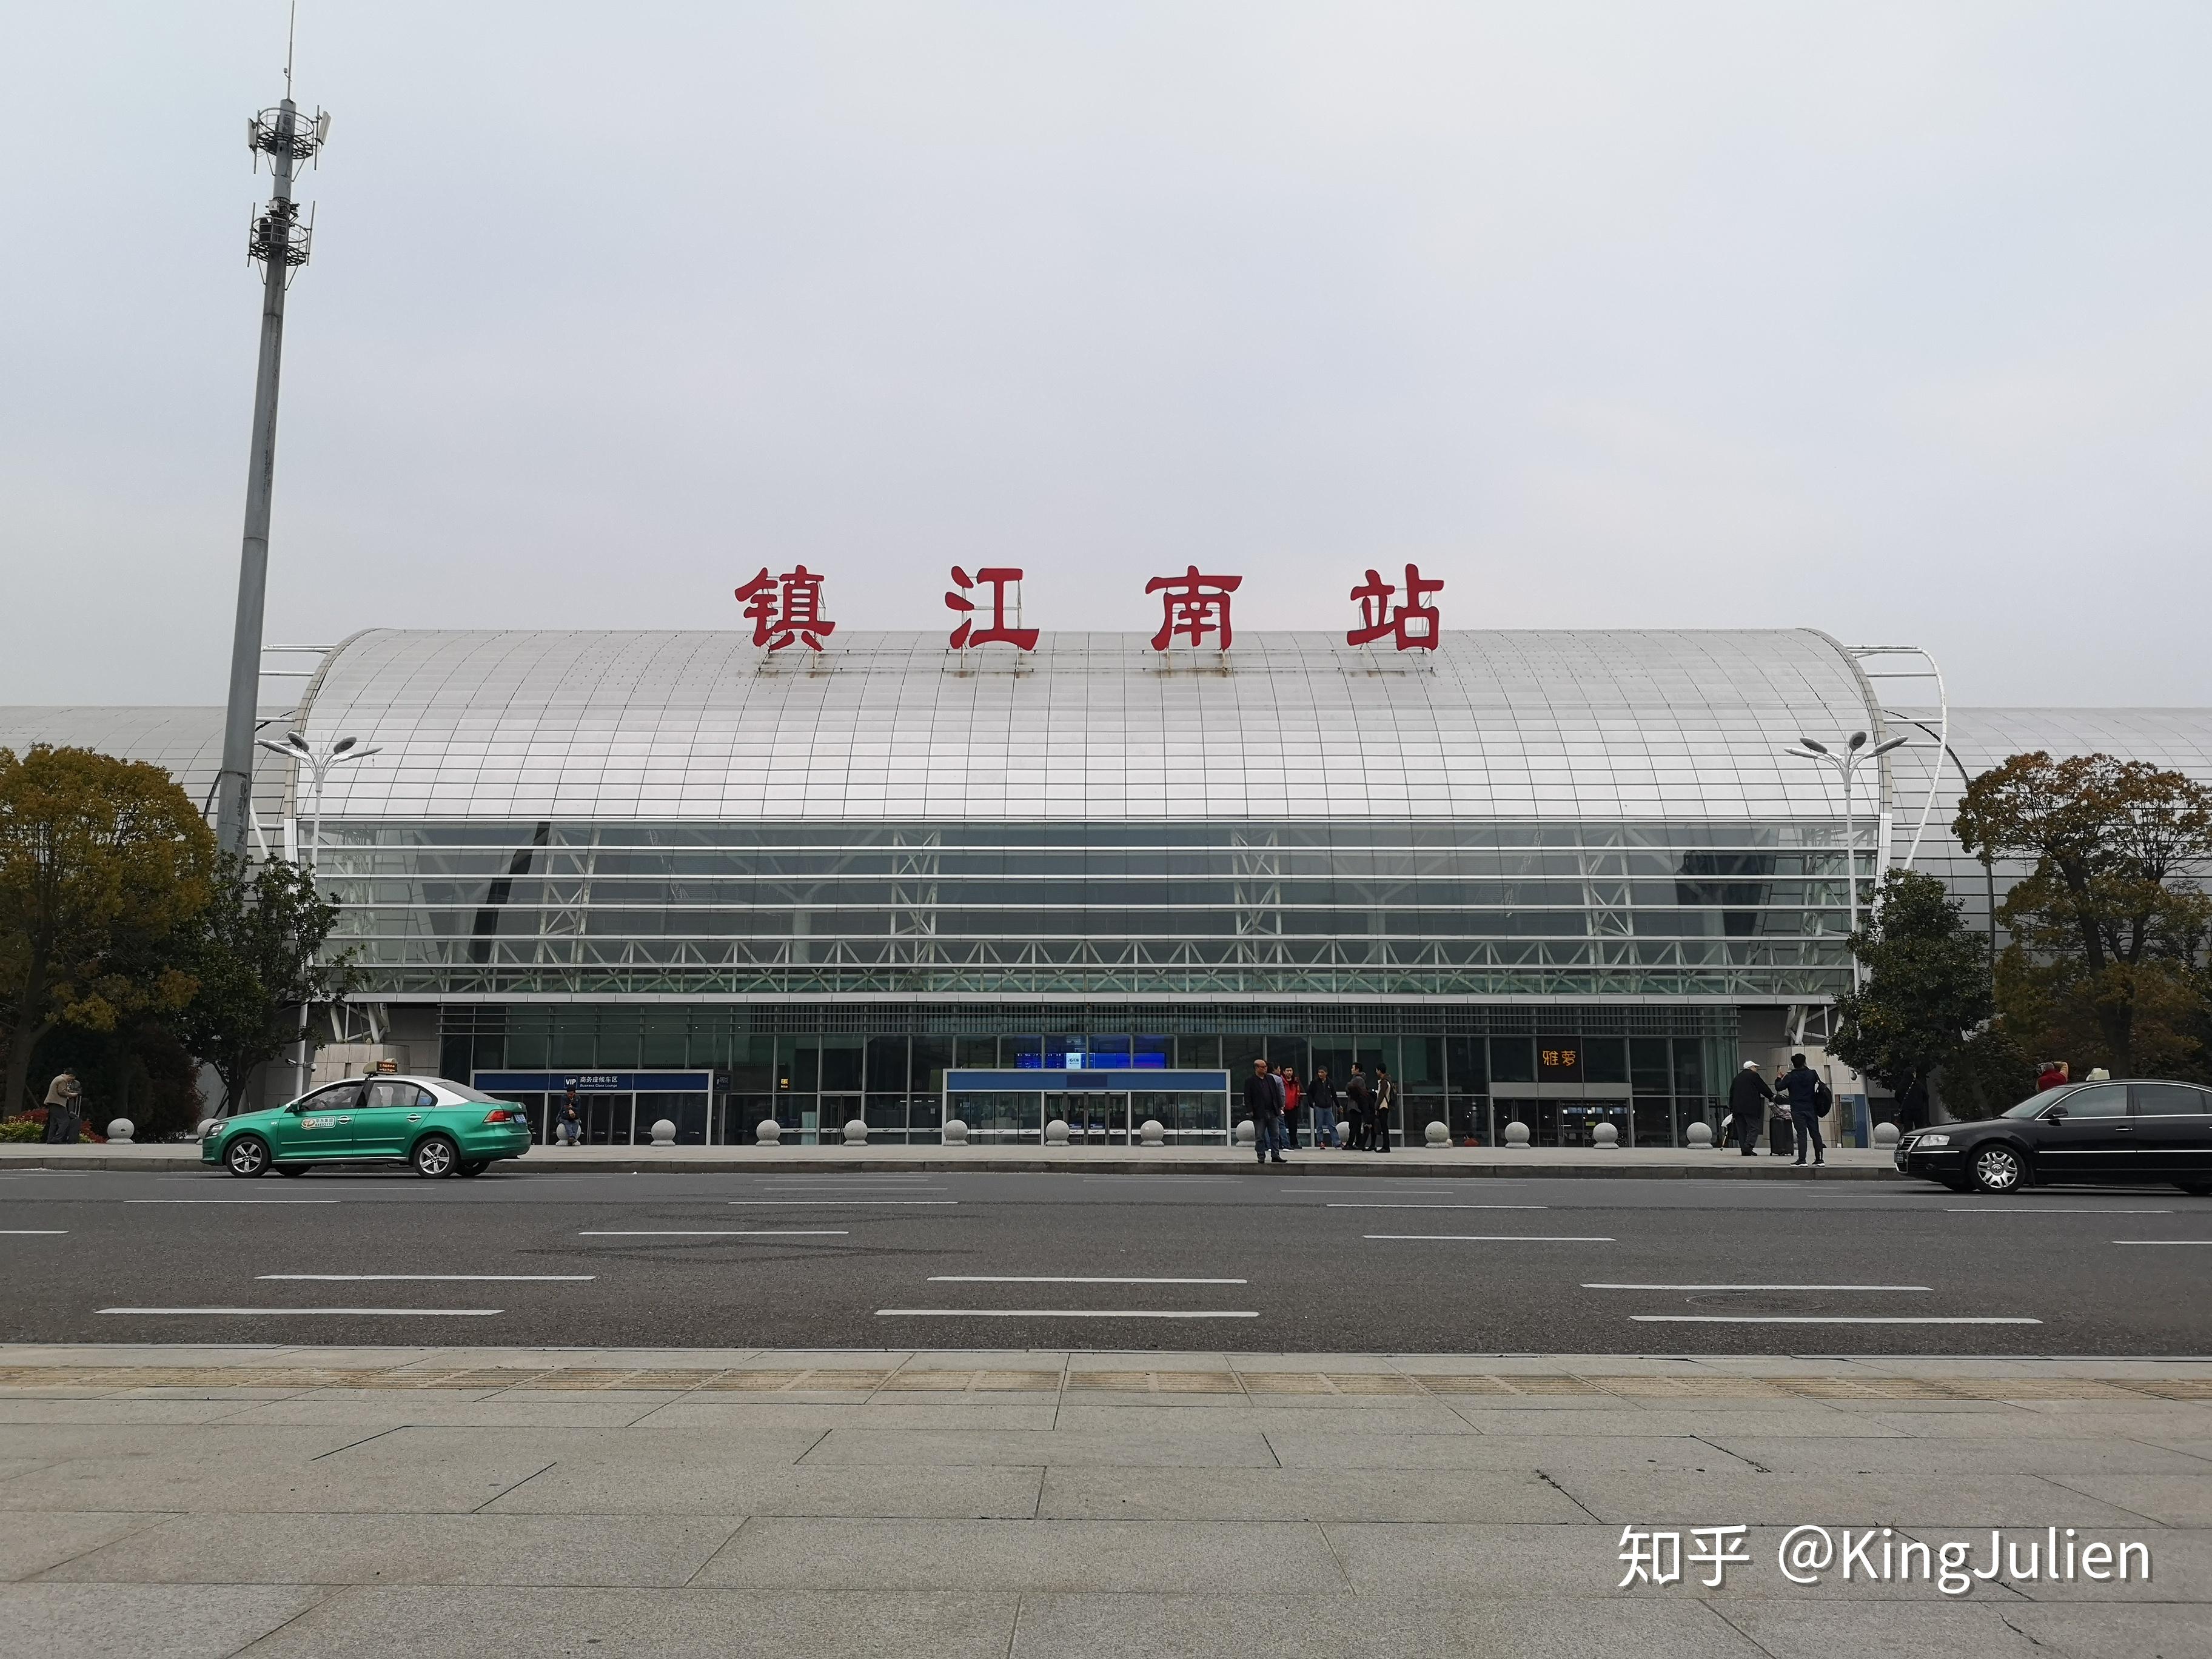 上海火车站平面示意图 » 上海外教网足迹